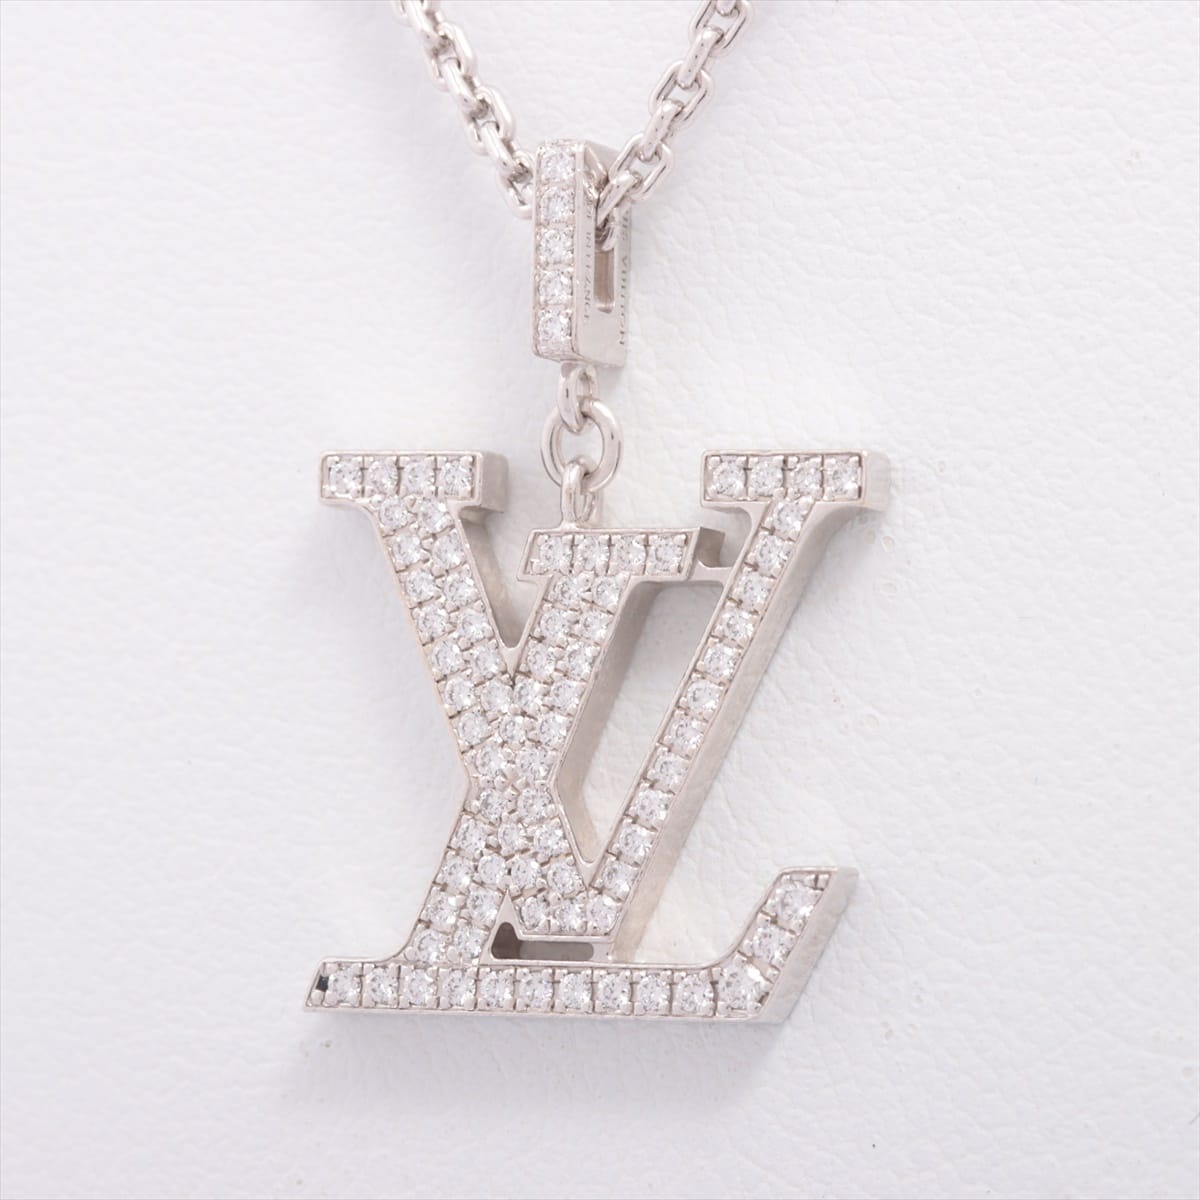 Louis Vuitton Pandantif LV GM diamond Necklace 750(WG) 10.8g